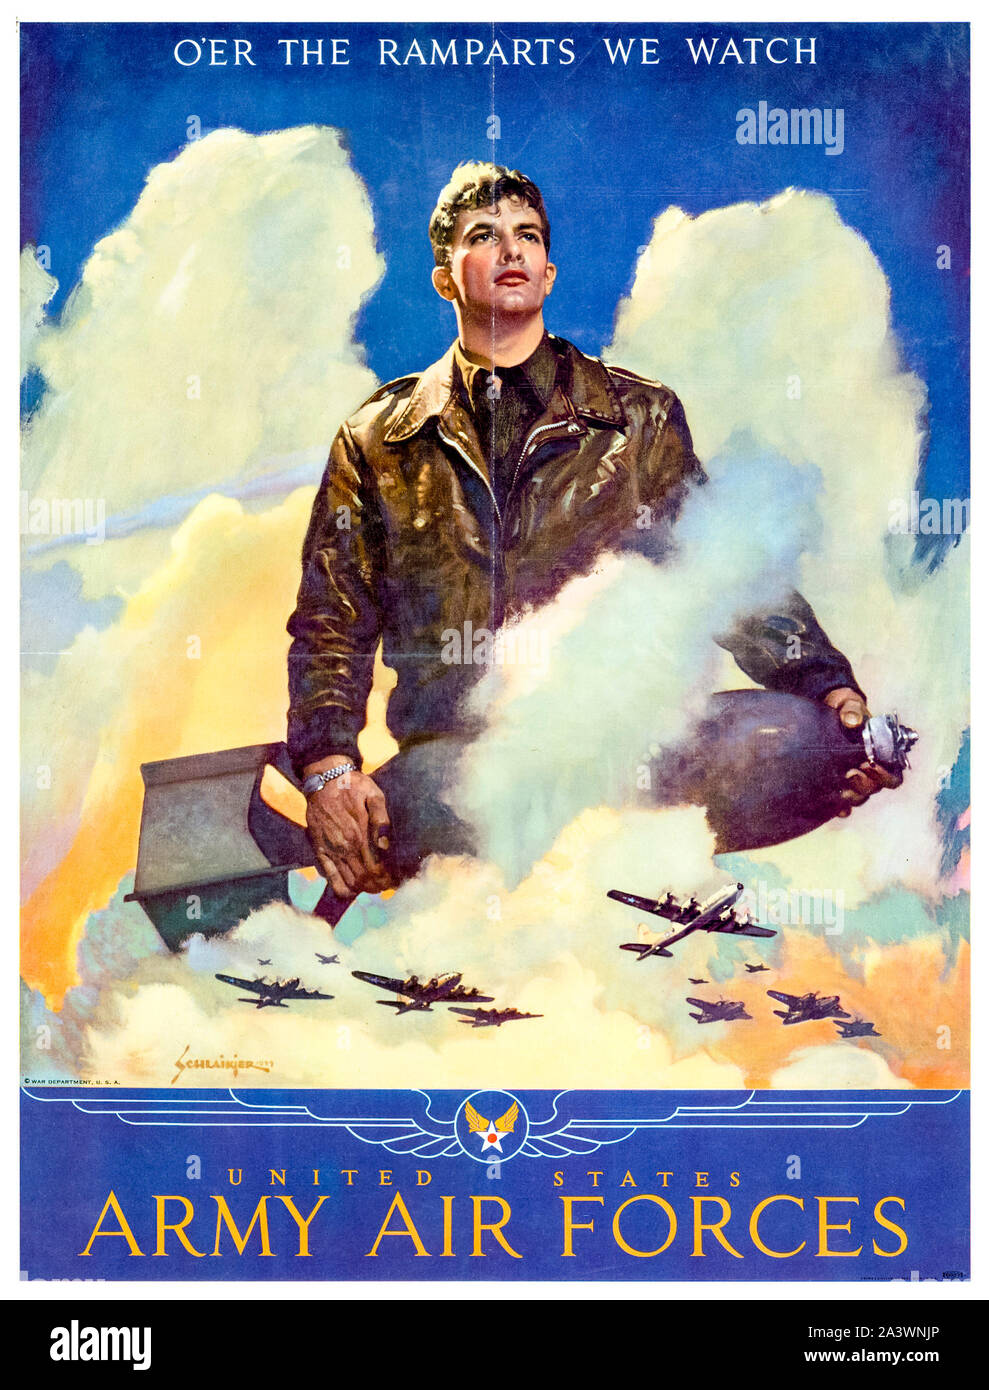 Nous, américains, WW2, poster de motivation, l'O'er les remparts nous regarder, United States Army Air Forces, aviateur (avec bombe), 1941-1945 Banque D'Images